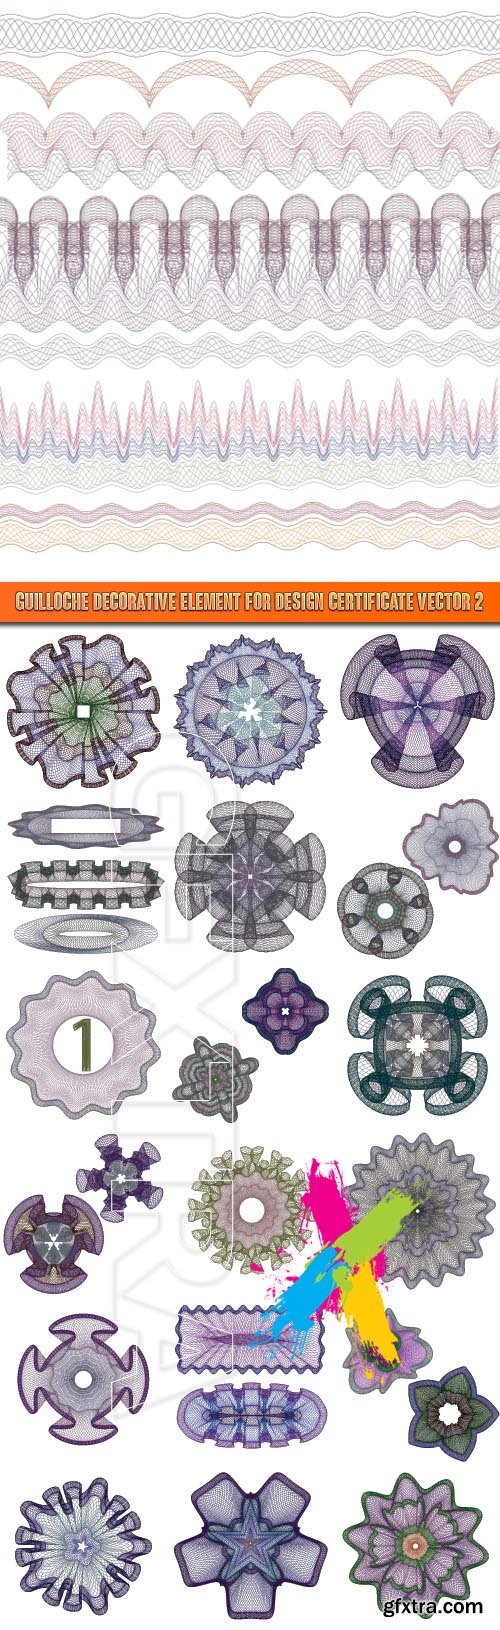 Guilloche decorative element for design certificate vector 2